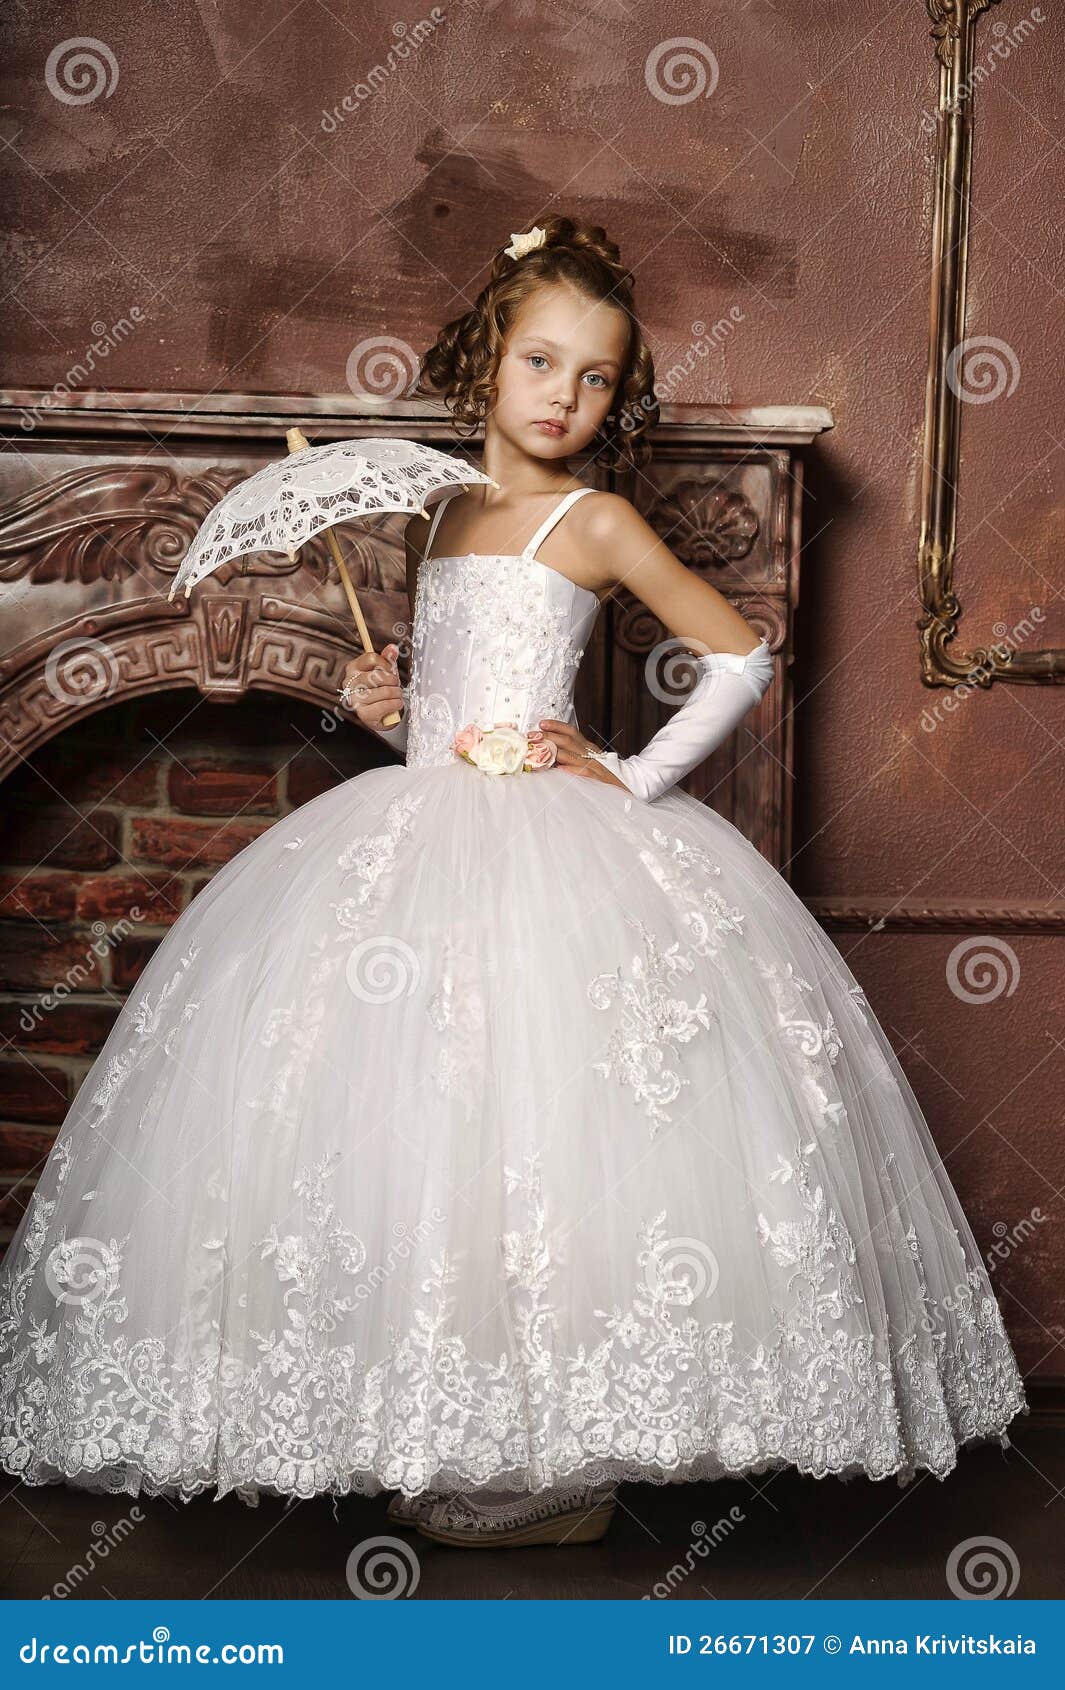 wedding dress for a little girl